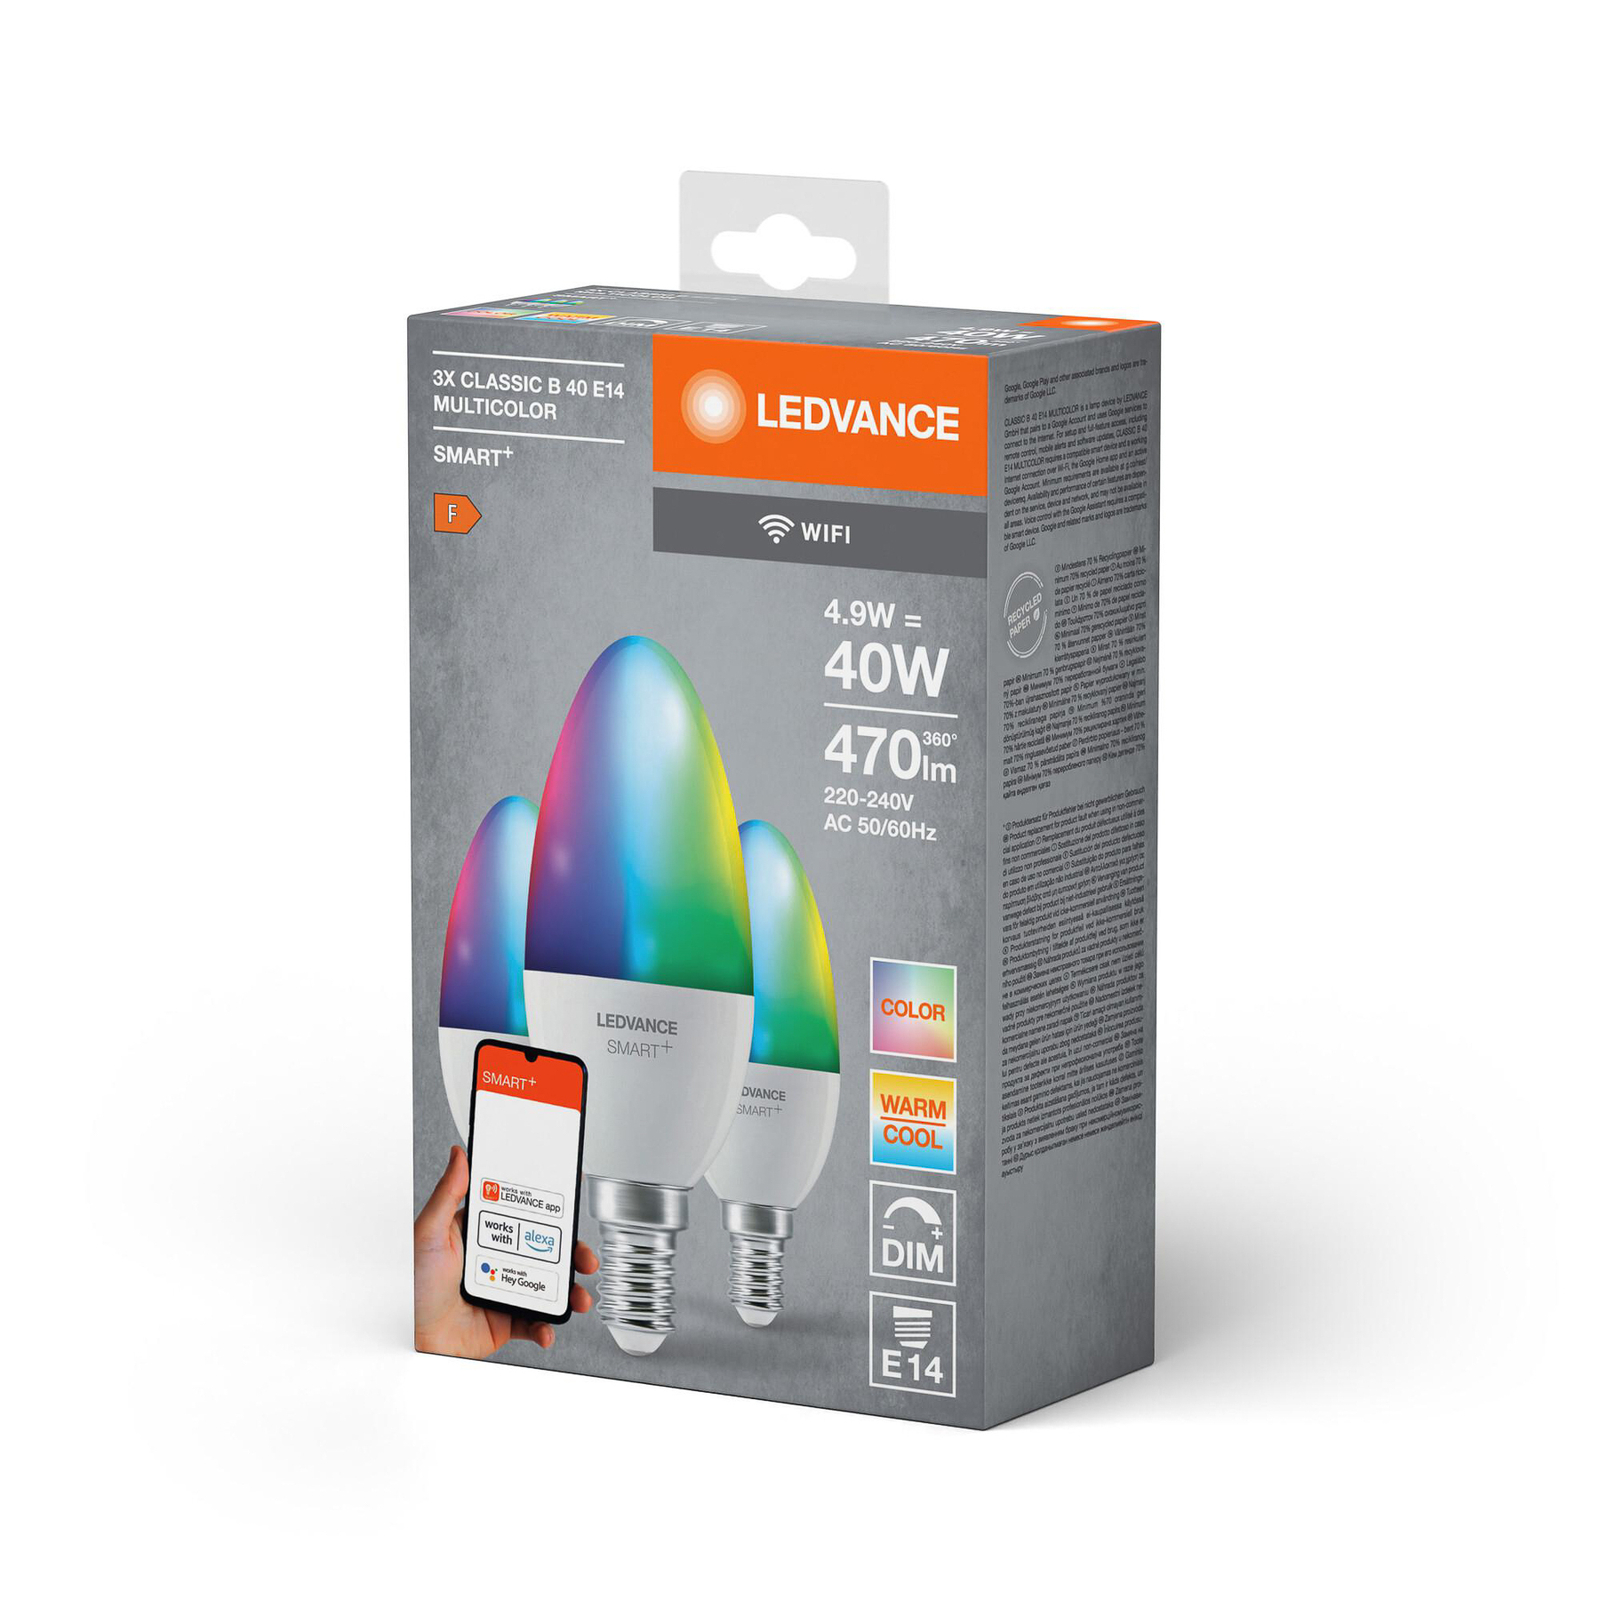 LEDVANCE SMART+ LED, svijeća, E14, 4,9 W, CCT, RGB, WiFi, 3 komada